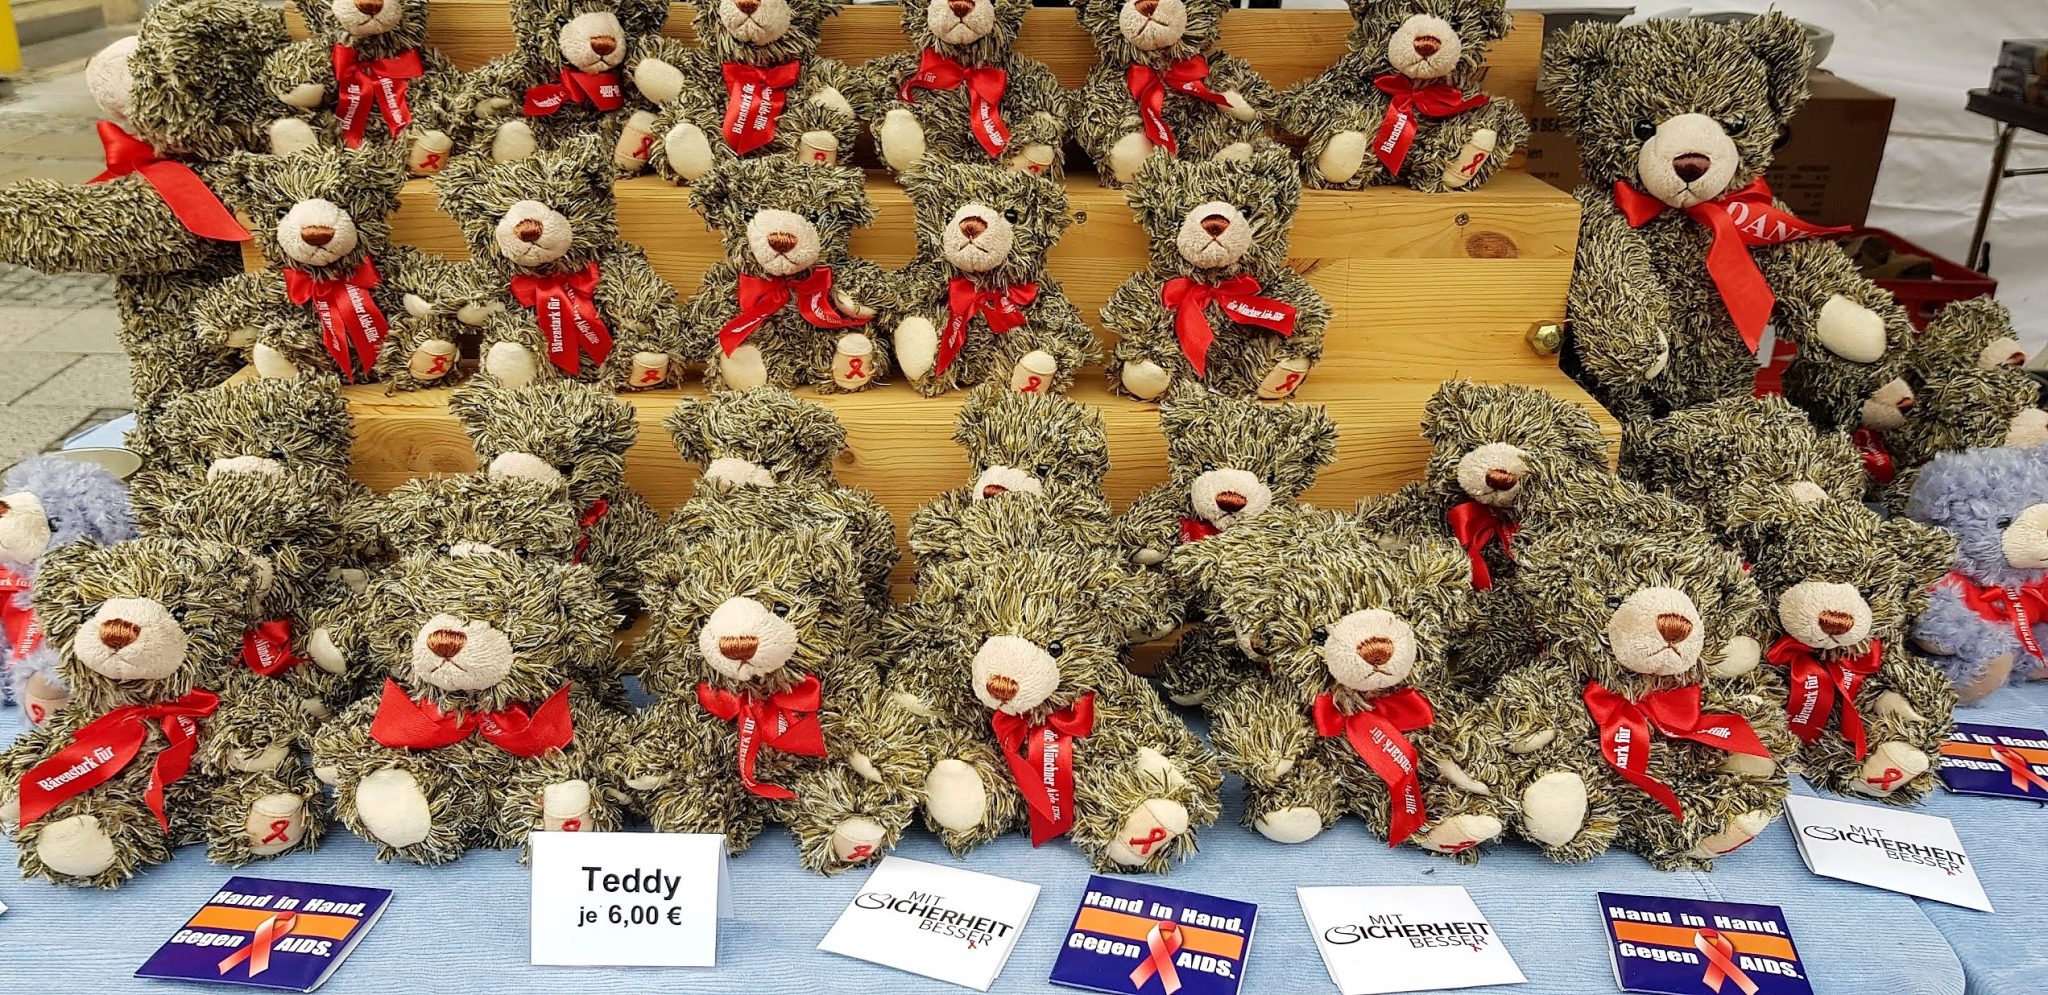 Teddybären-Verkauf zugunsten der Münchner Aids-Hilfe